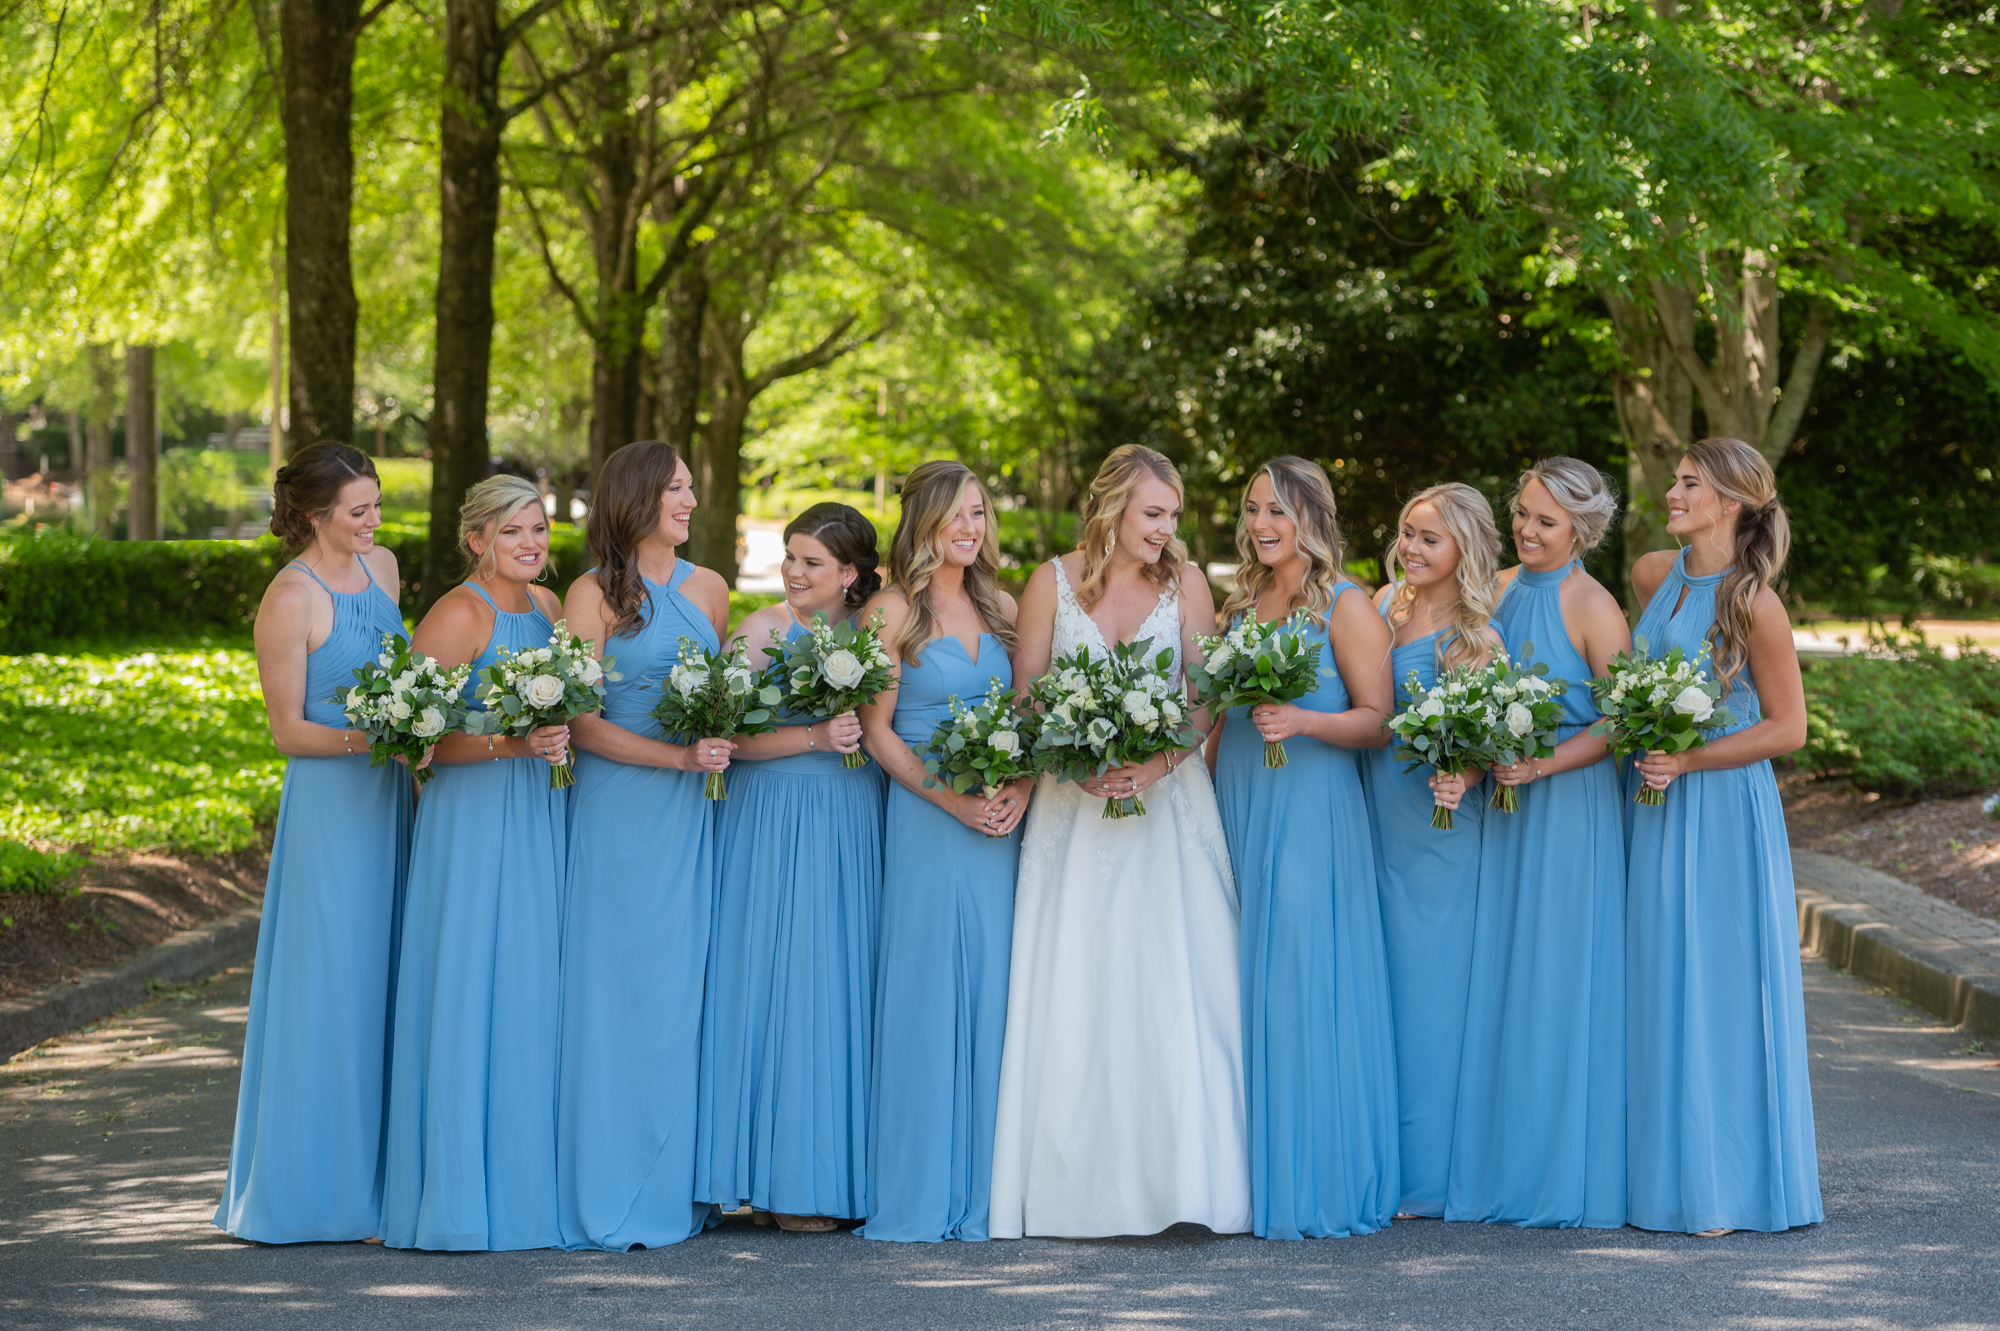 brides with bridesmaids